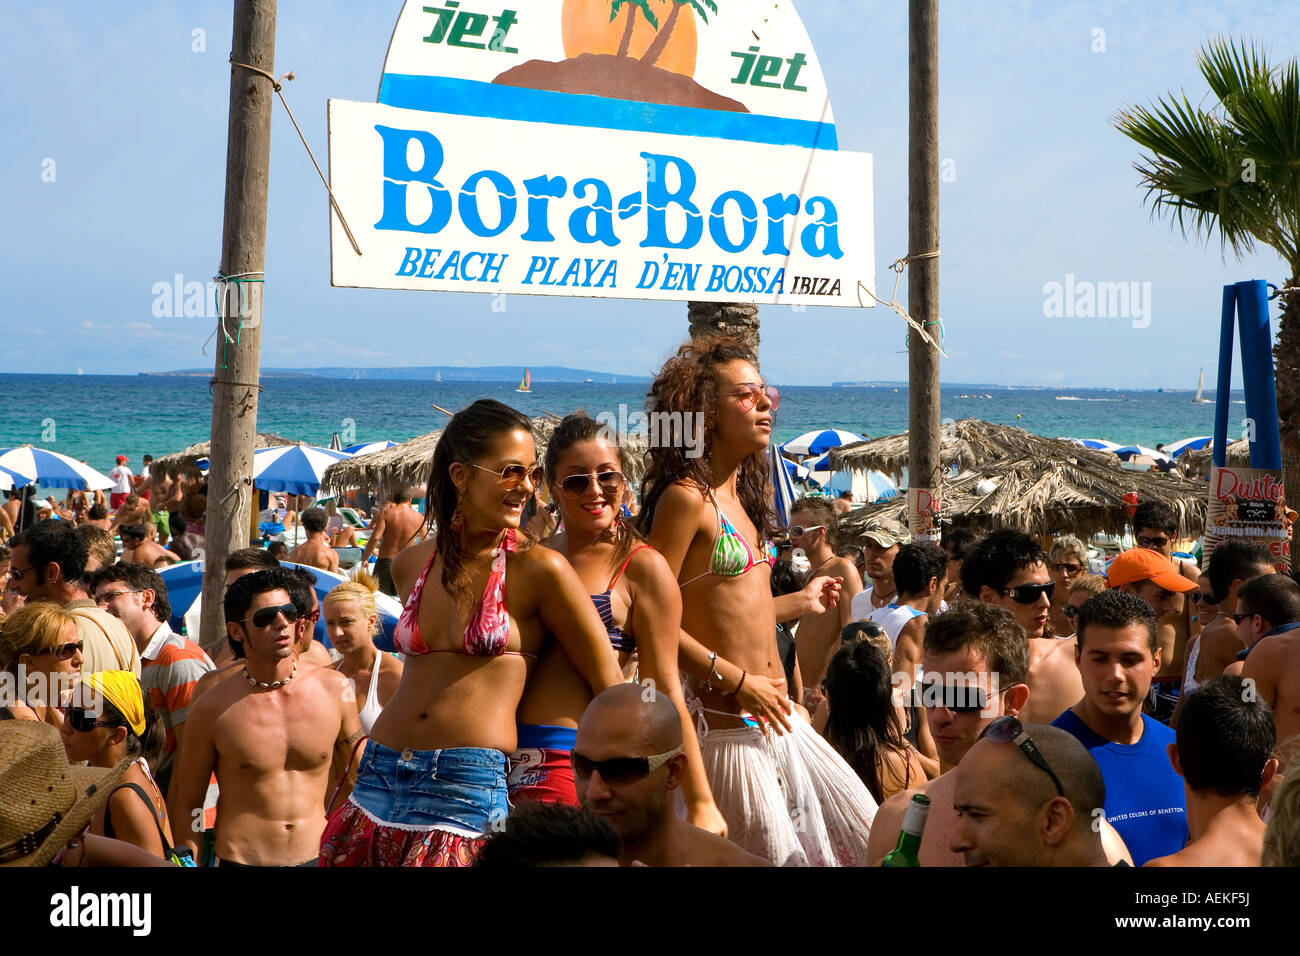 Bora Bora Beach Ibiza Stock Photos Bora Bora Beach Ibiza